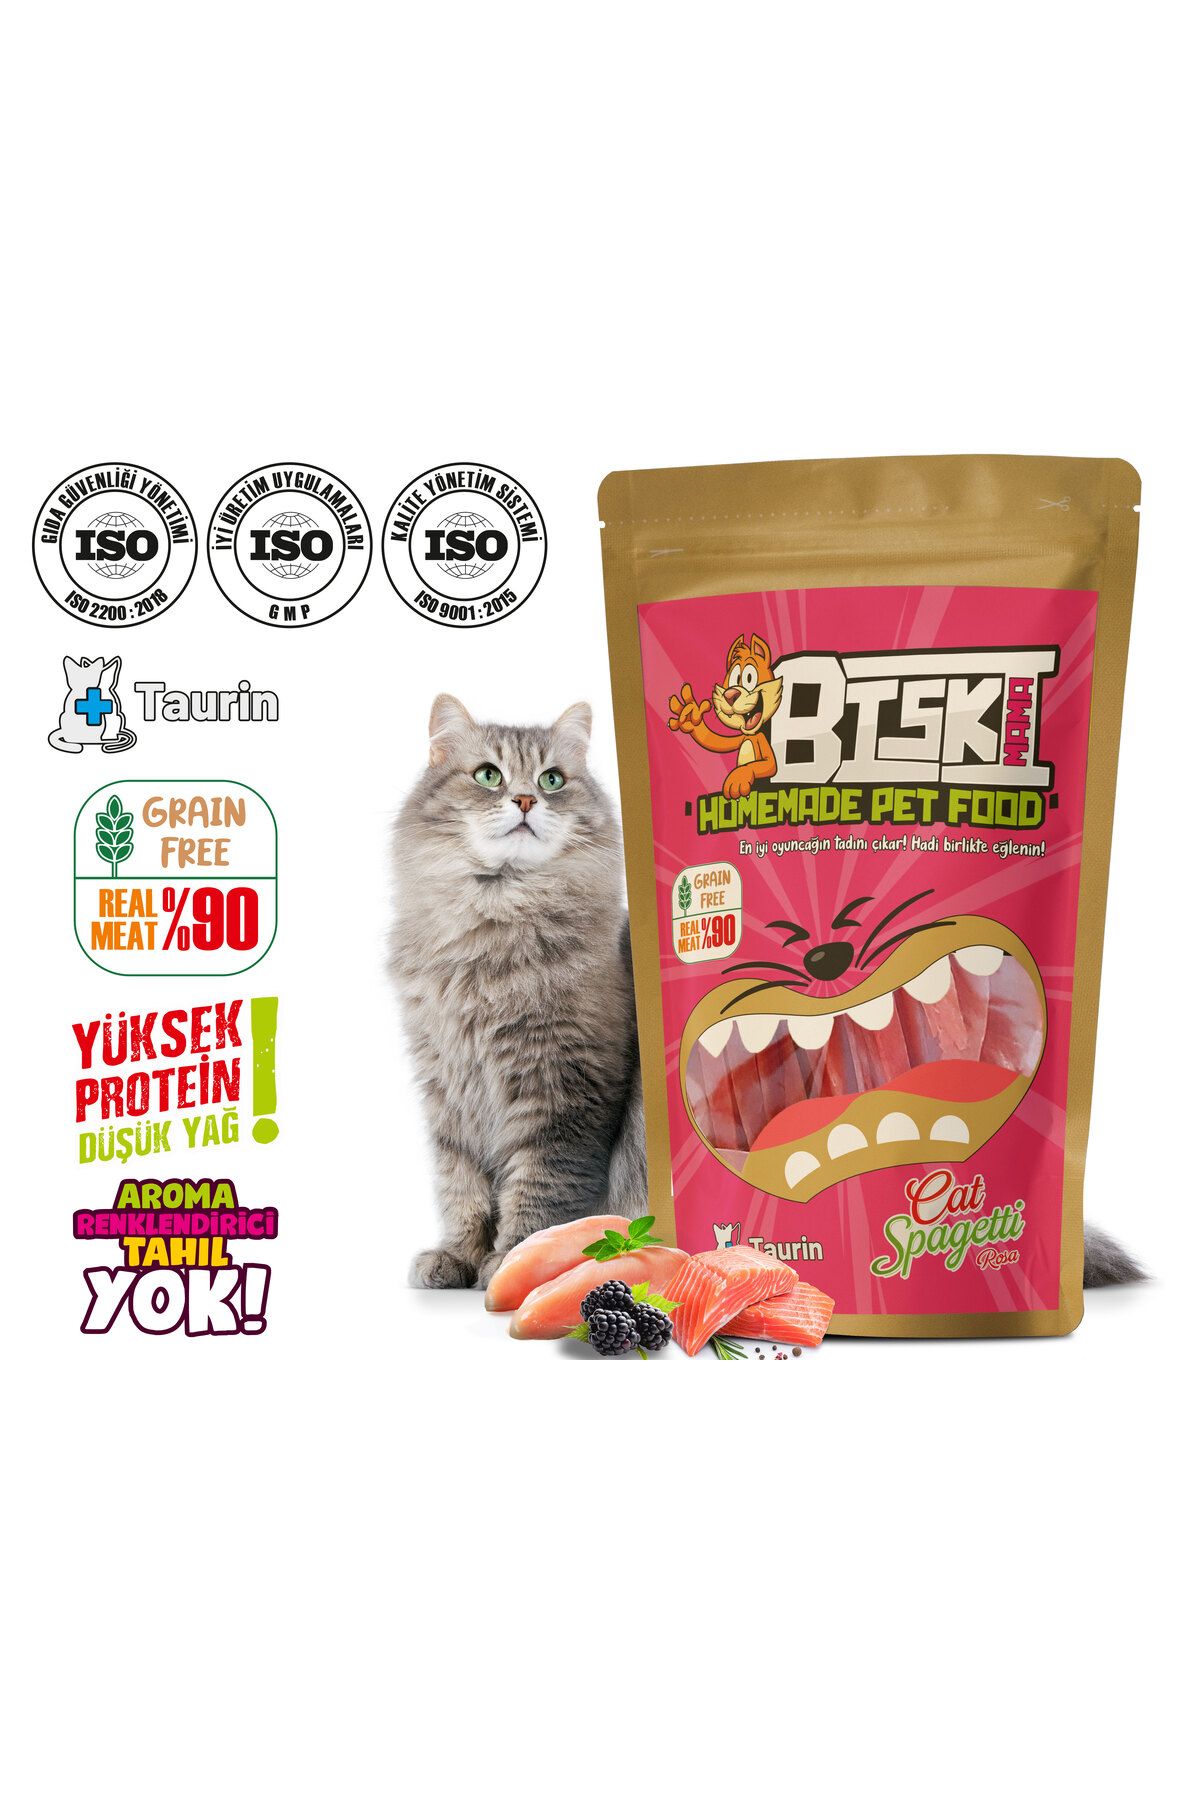 Biskimama Homemade Pet Food Biskimama Gerçek Tavuk Ve Balık (SOMON) Etli - Kedi Makarna Oyuncağı Rosa Böğürtlenli+Taurinli